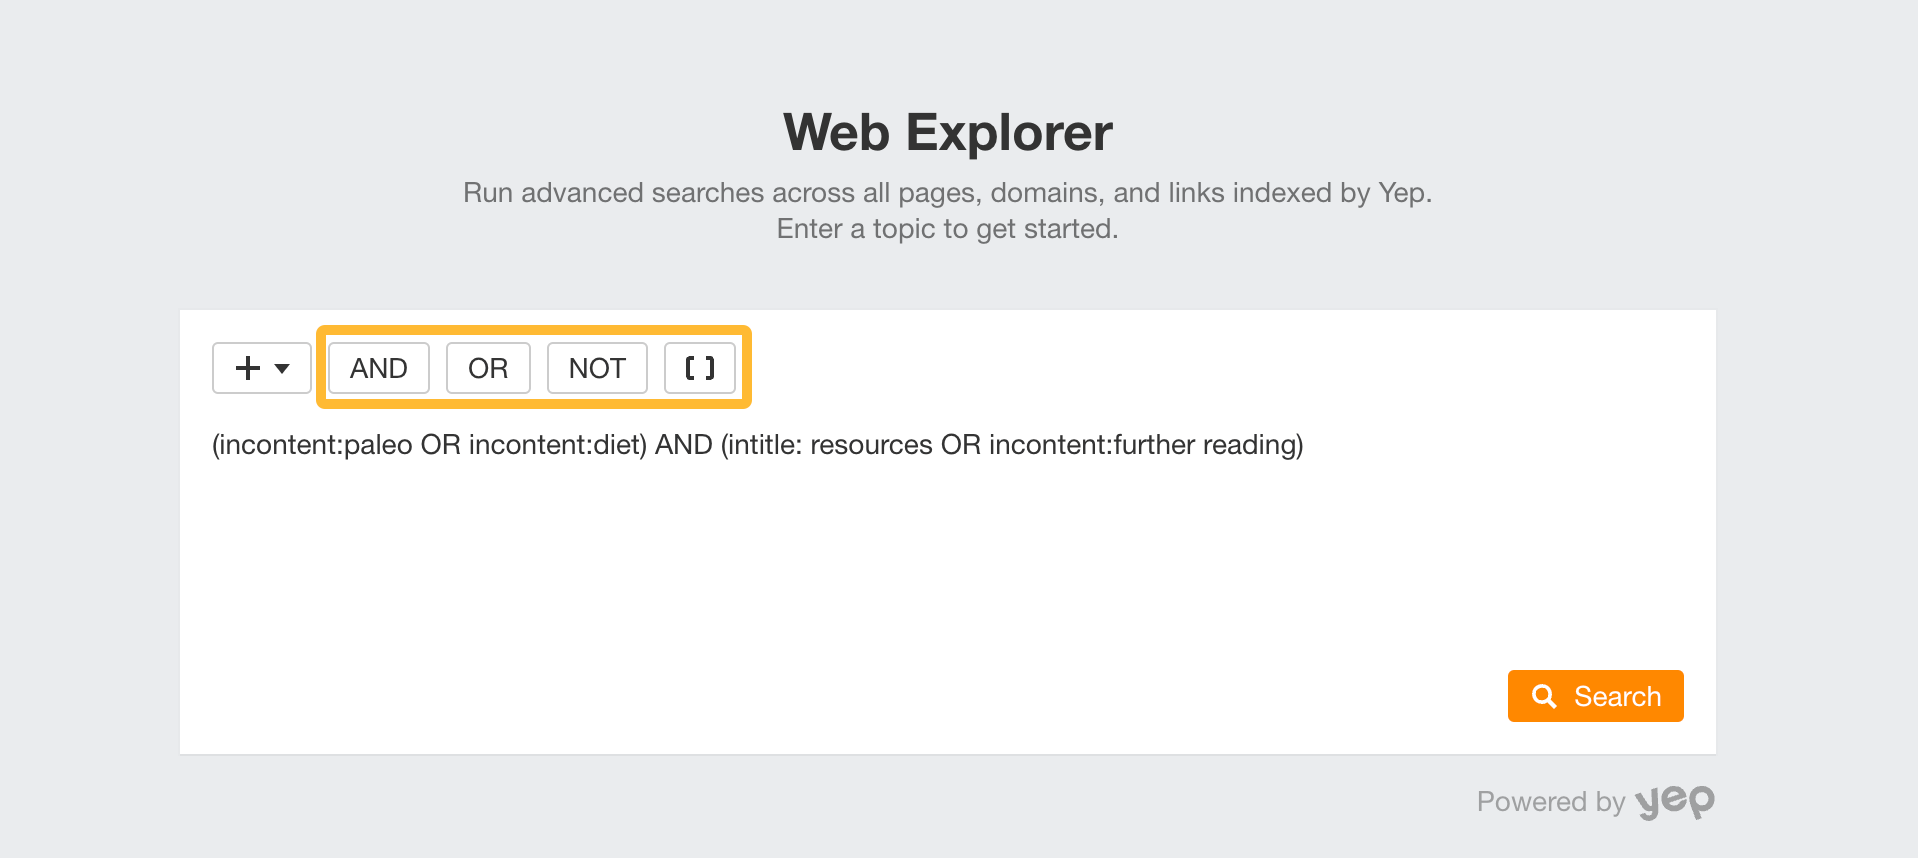 Boolean search operators, via Ahrefs' Web Explorer